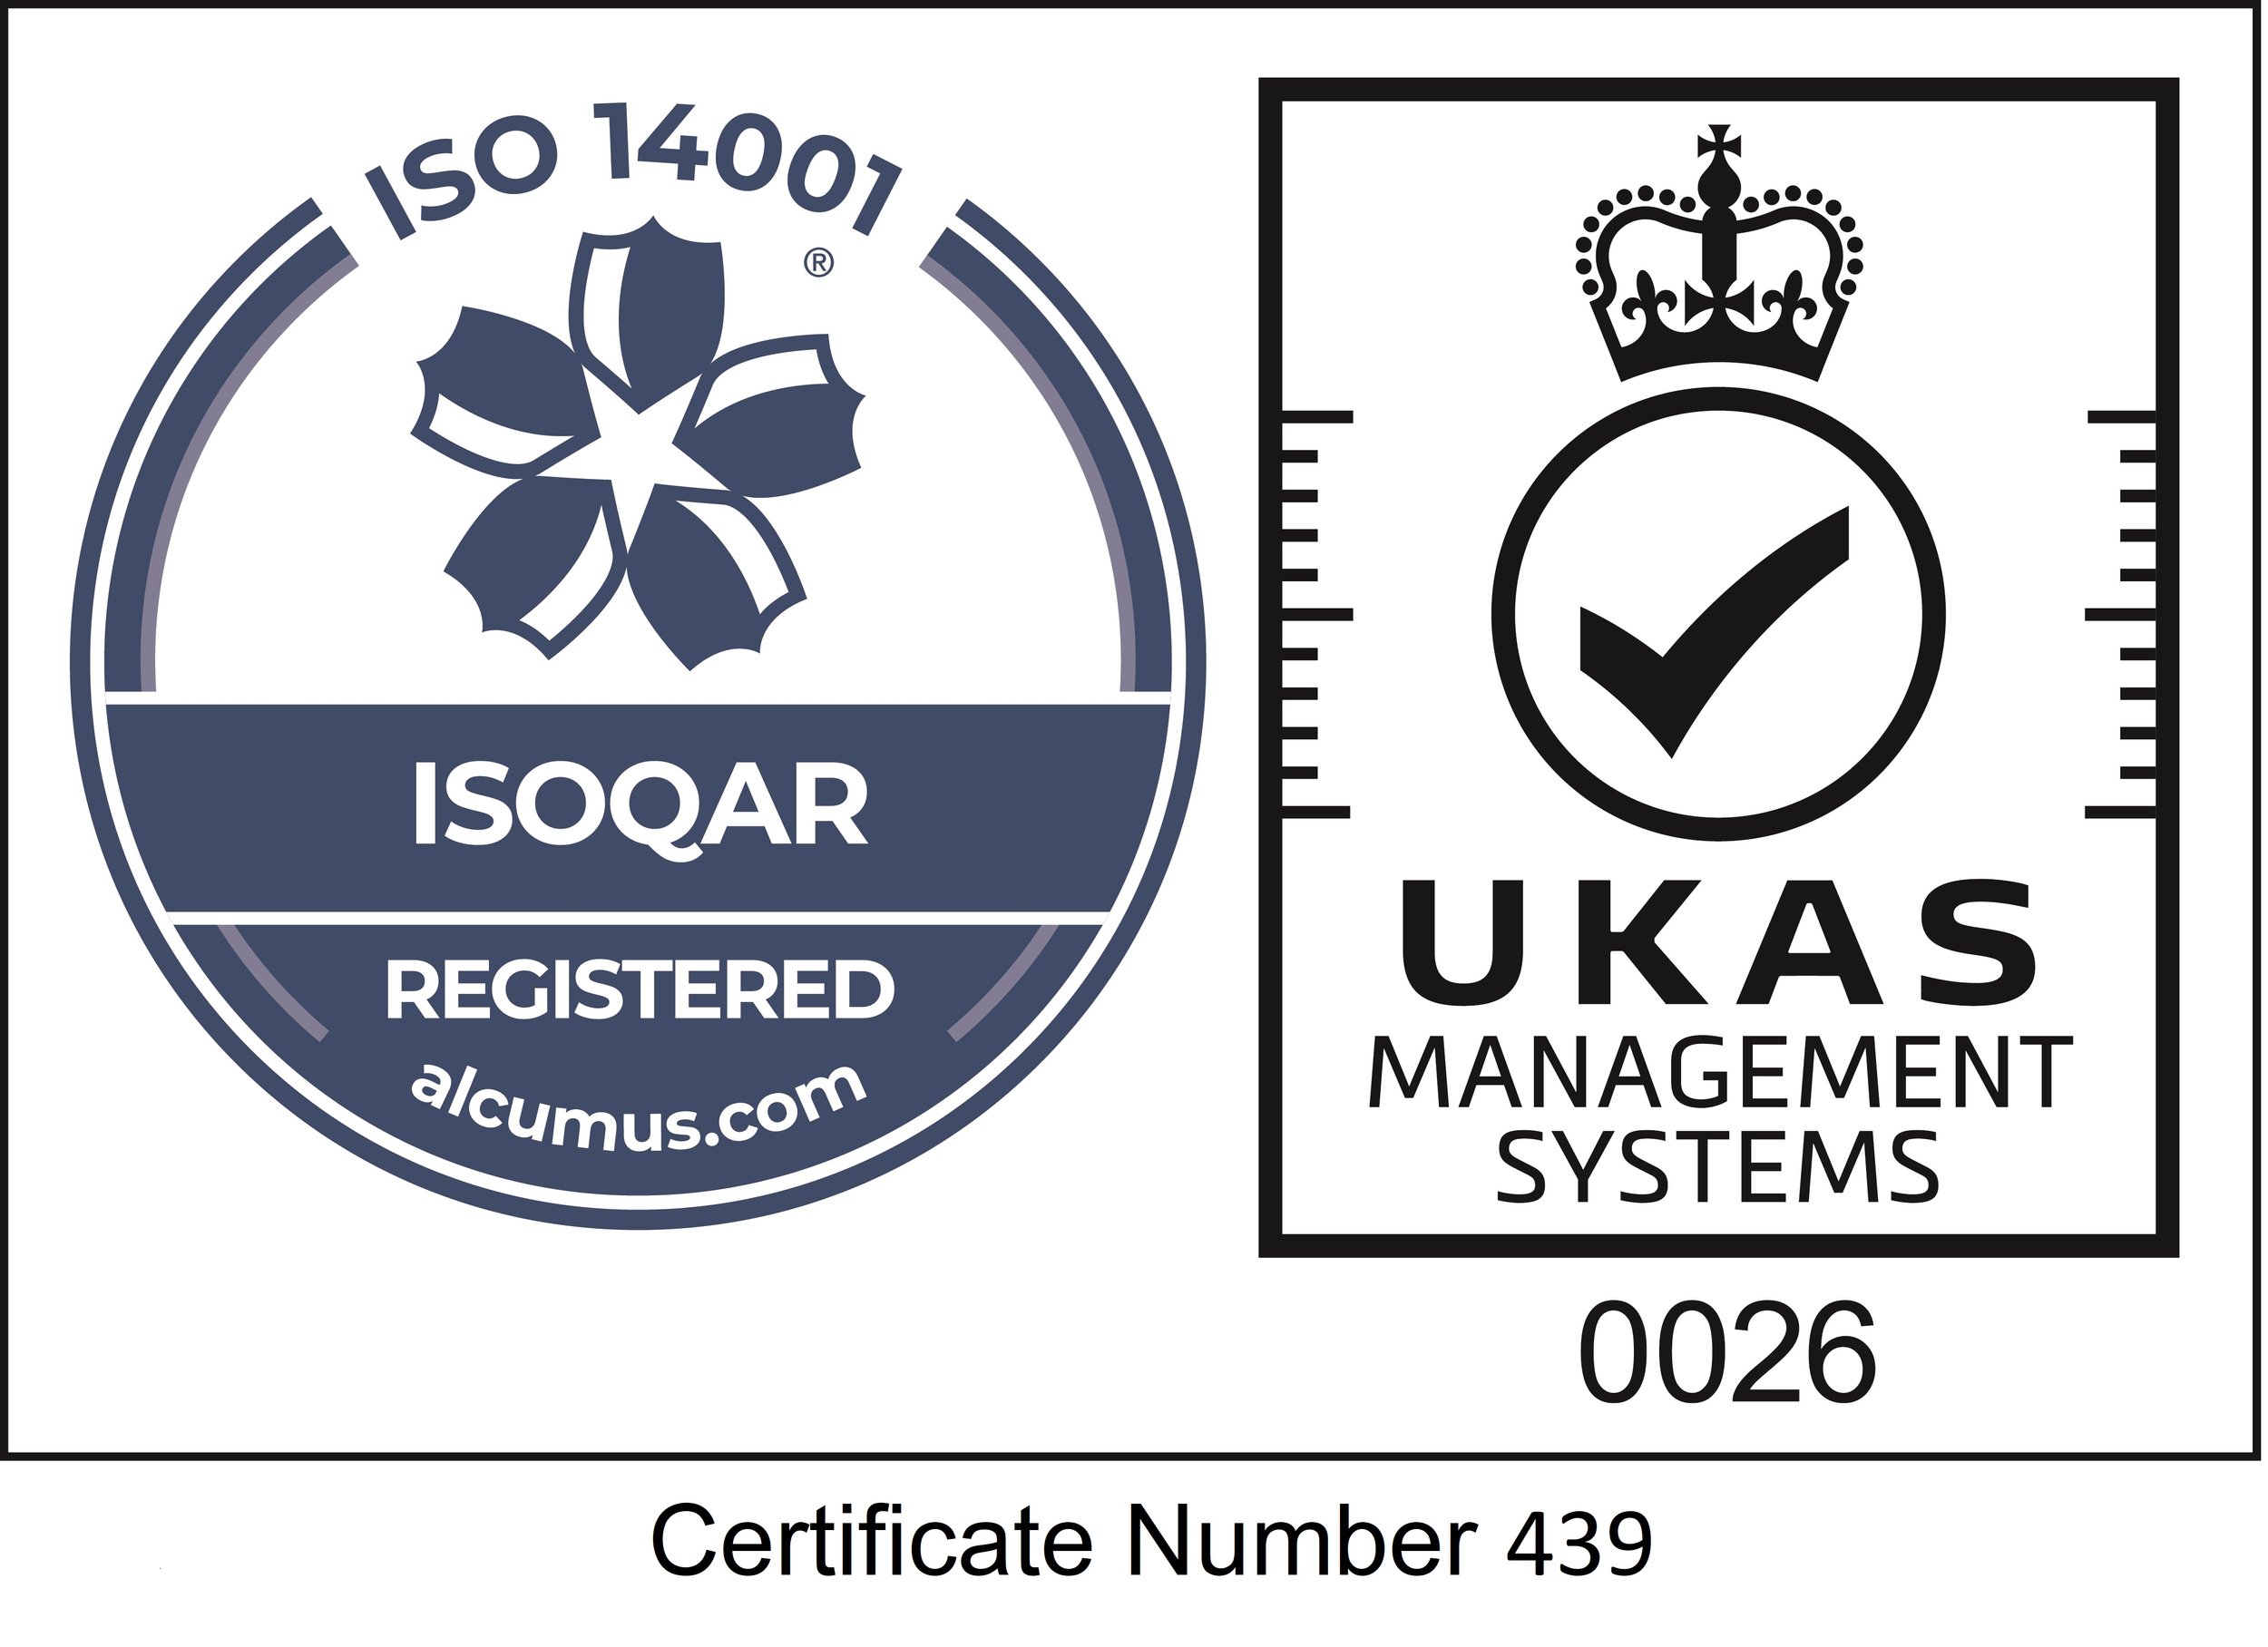 UKAS-ISO14001-Logo with cert.jpg